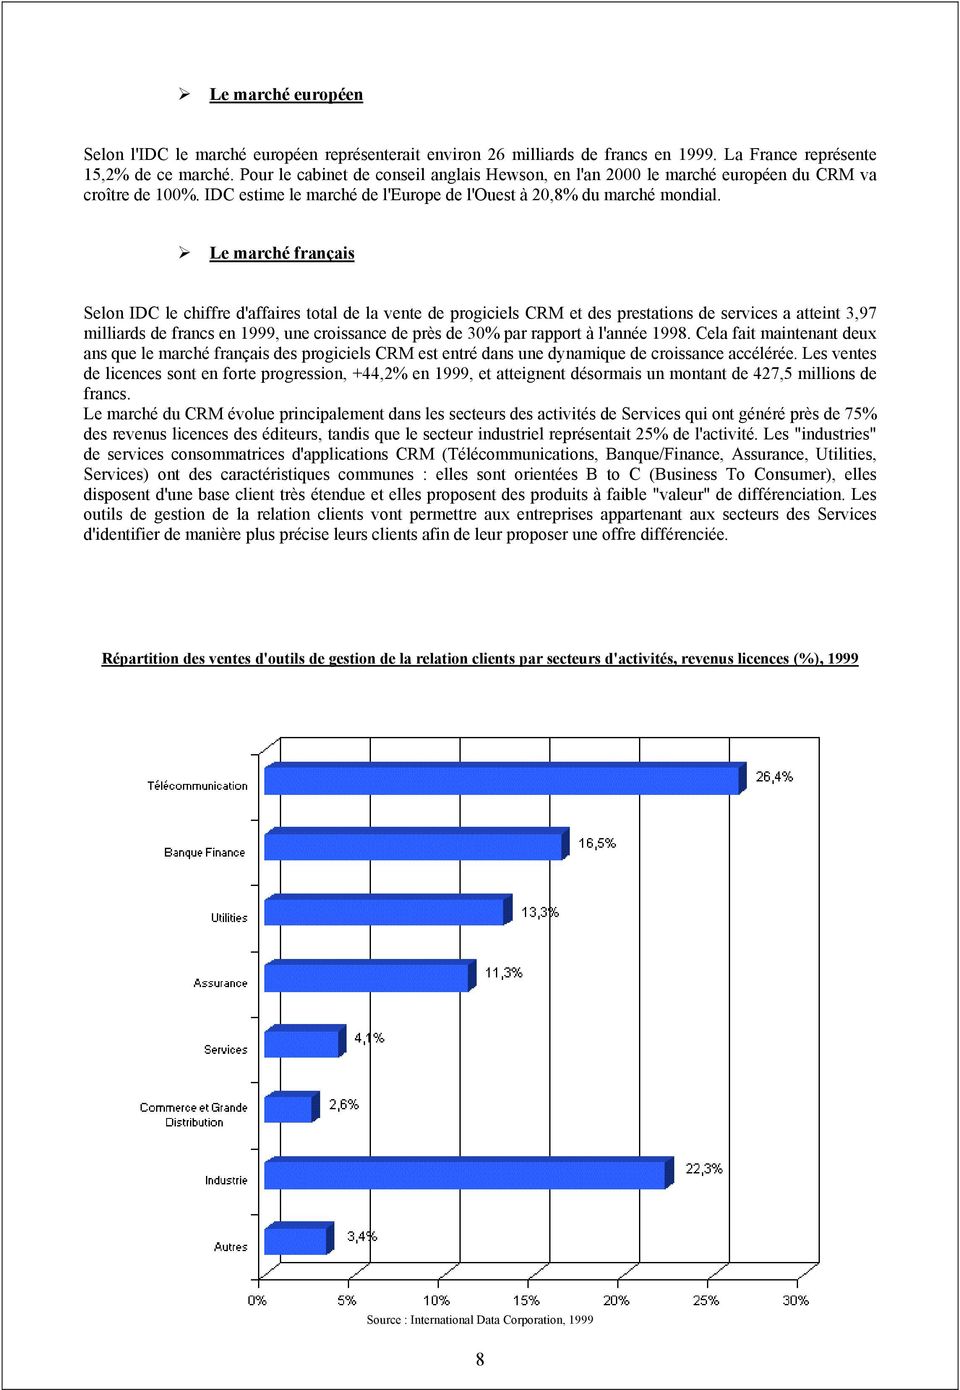 Le marché français Selon IDC le chiffre d'affaires total de la vente de progiciels CRM et des prestations de services a atteint 3,97 milliards de francs en 1999, une croissance de près de 30% par